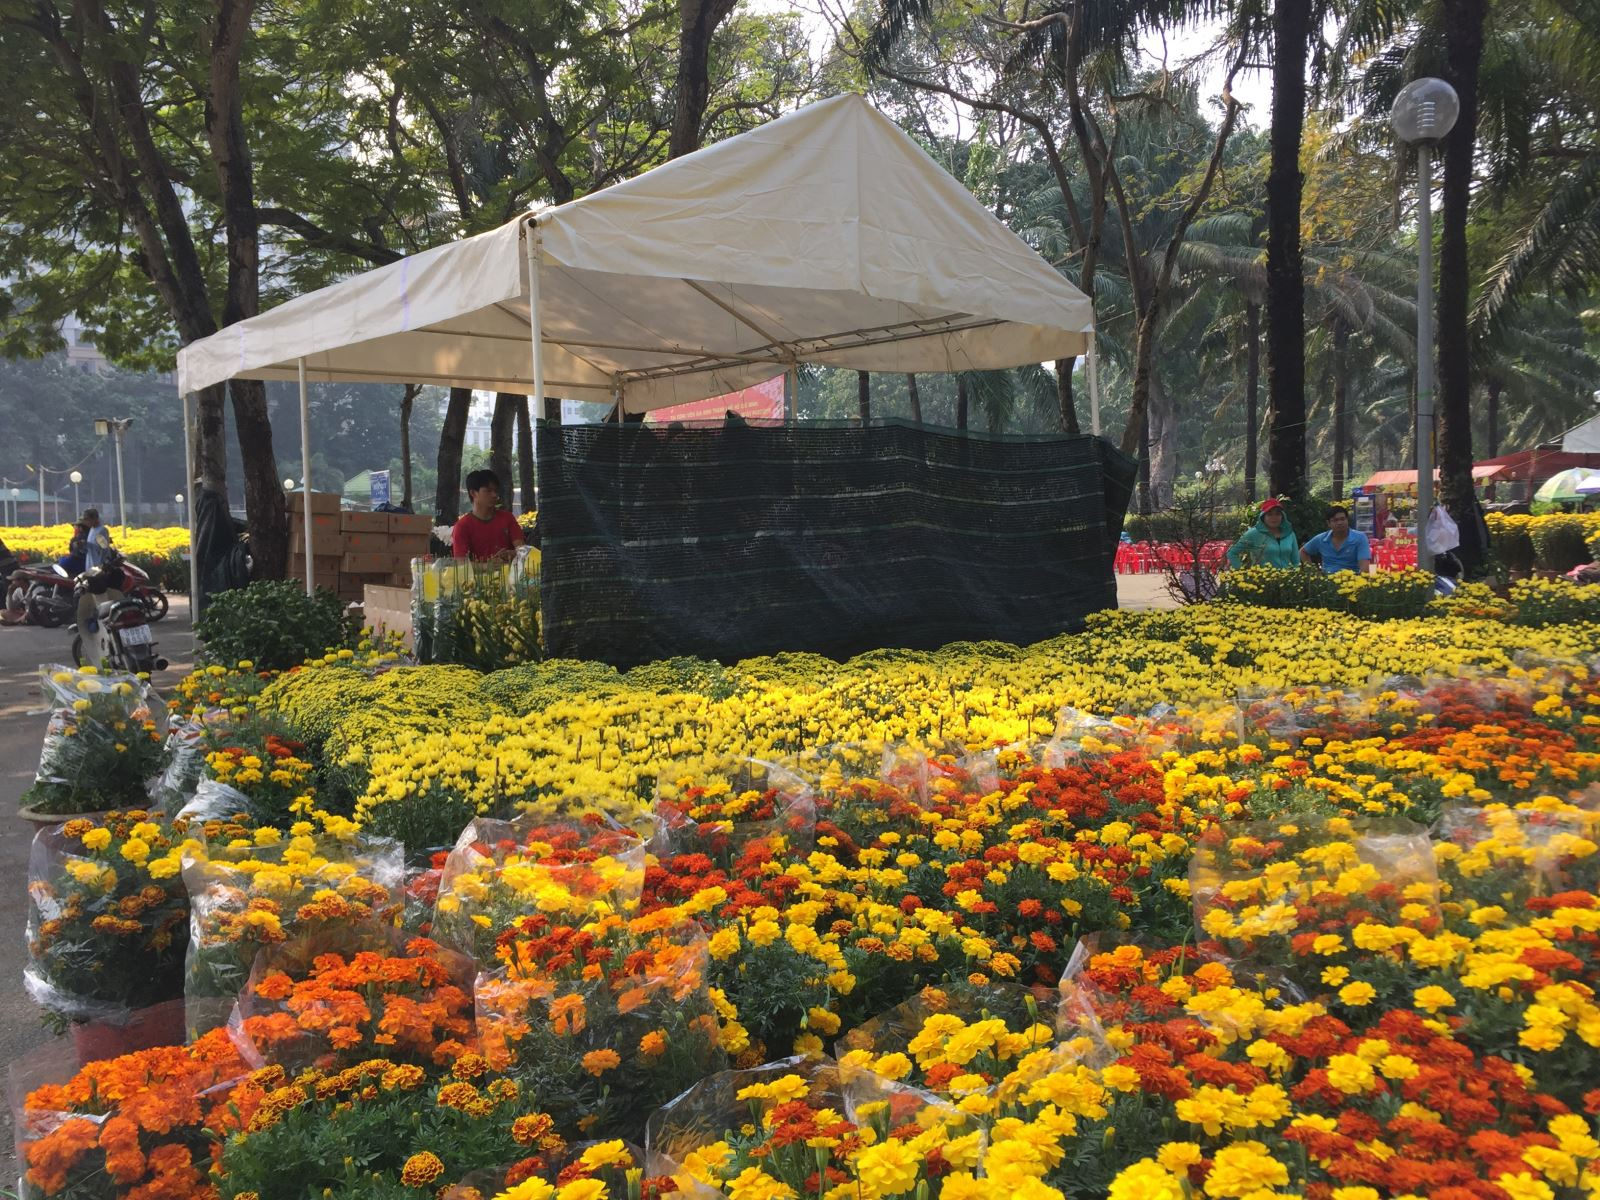   Các loại hoa cúc miền Tây đã có mặt tại các công viên lớn tại TP.HCM.  